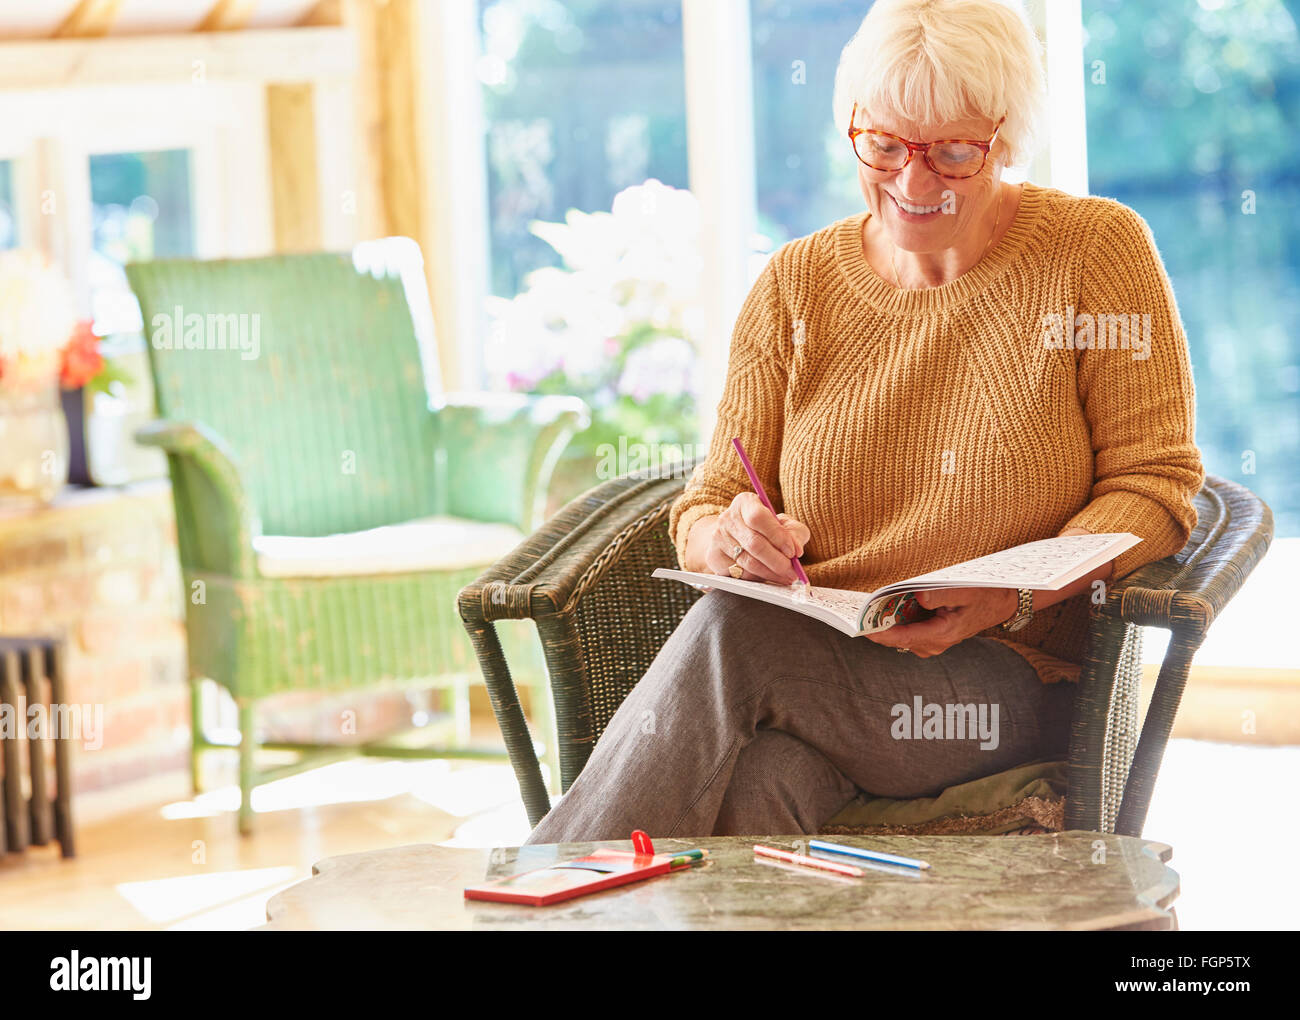 Femme senior dans un livre à colorier coloriage Banque D'Images